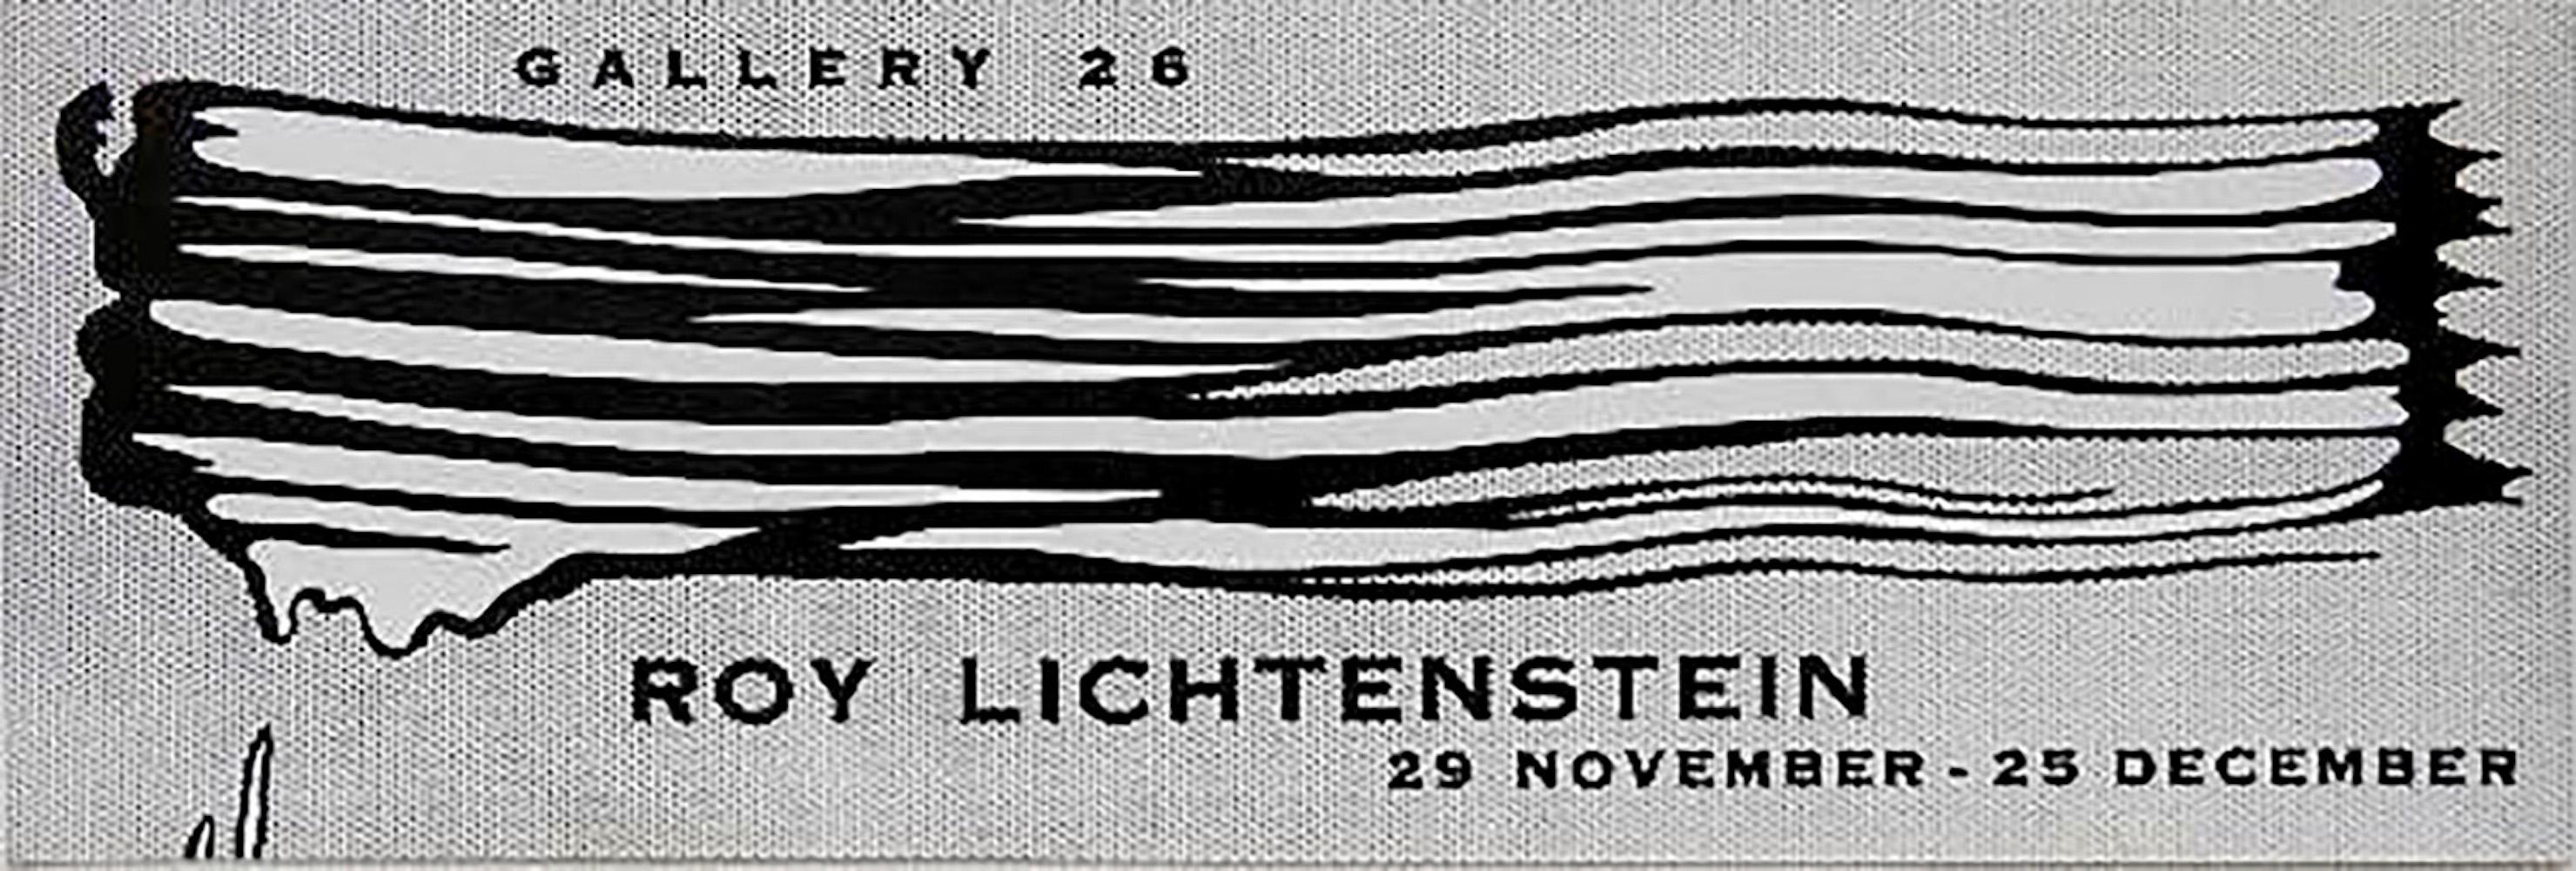 Gallery 26 Exhibition Poster - Print by Roy Lichtenstein